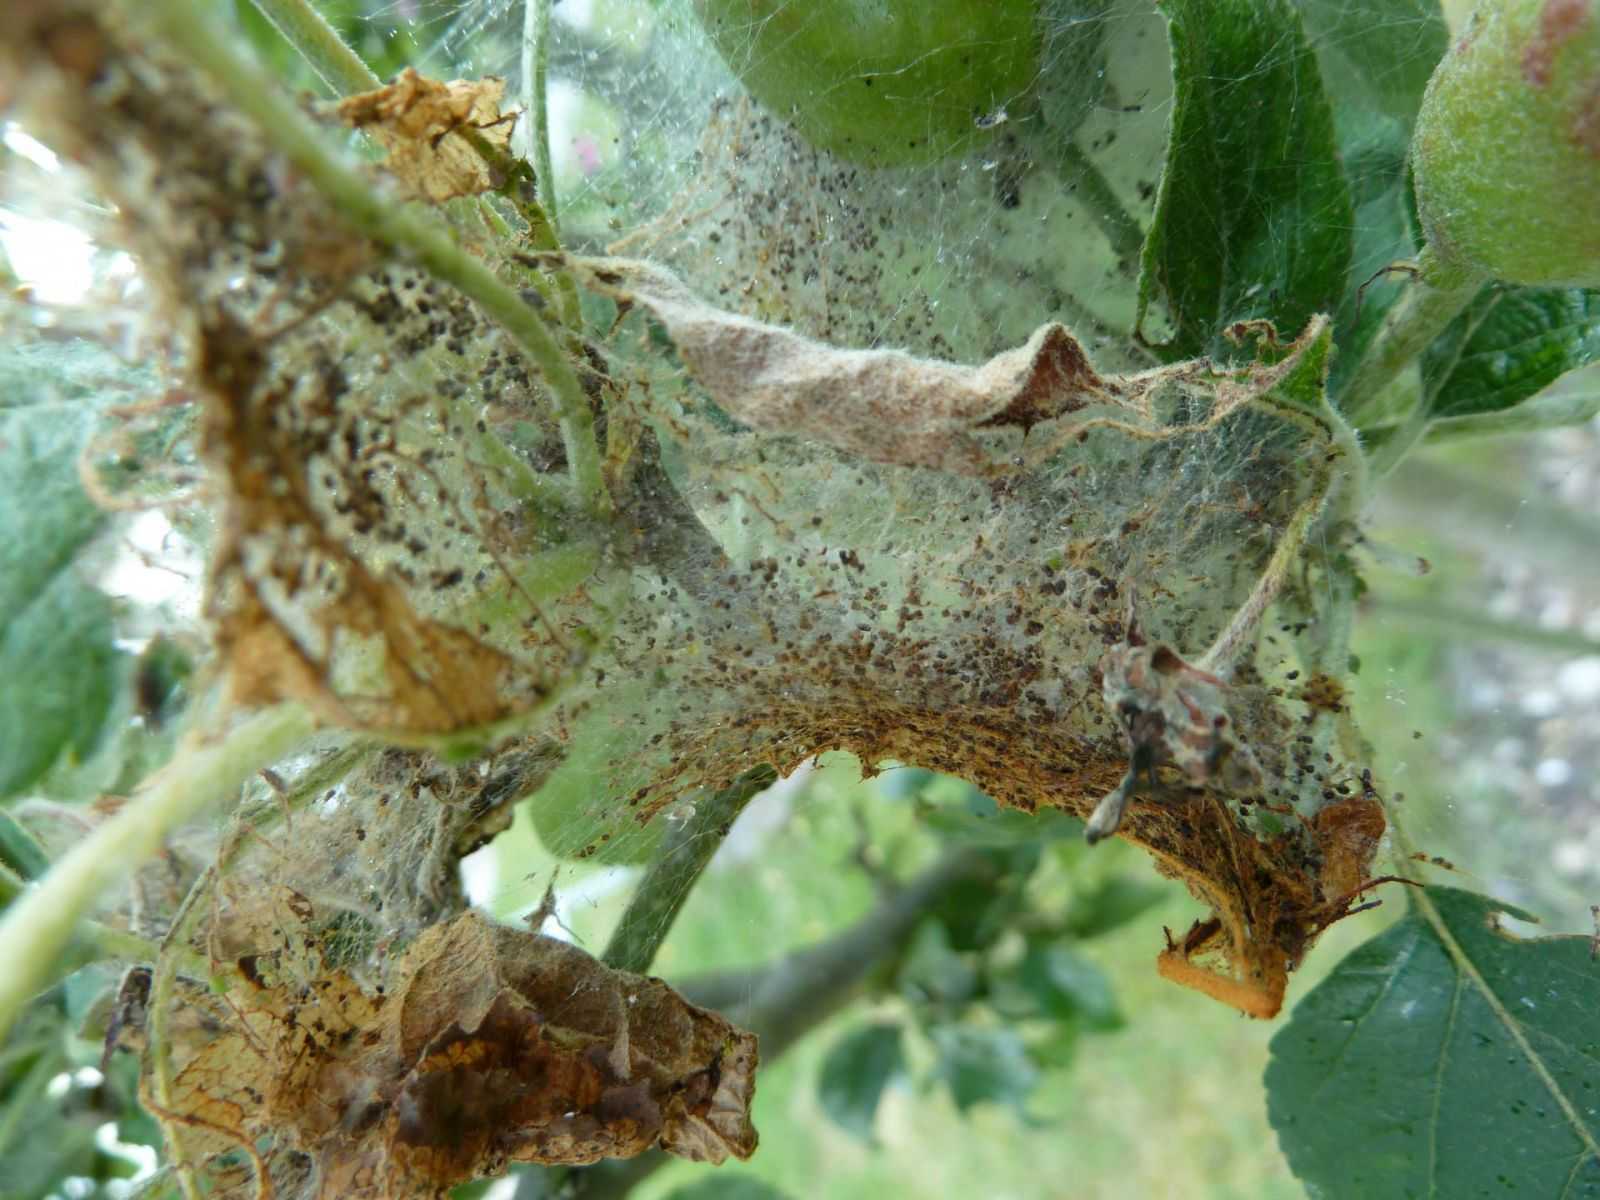 Яблонная моль — как бороться с вредителем? фото — ботаничка.ru